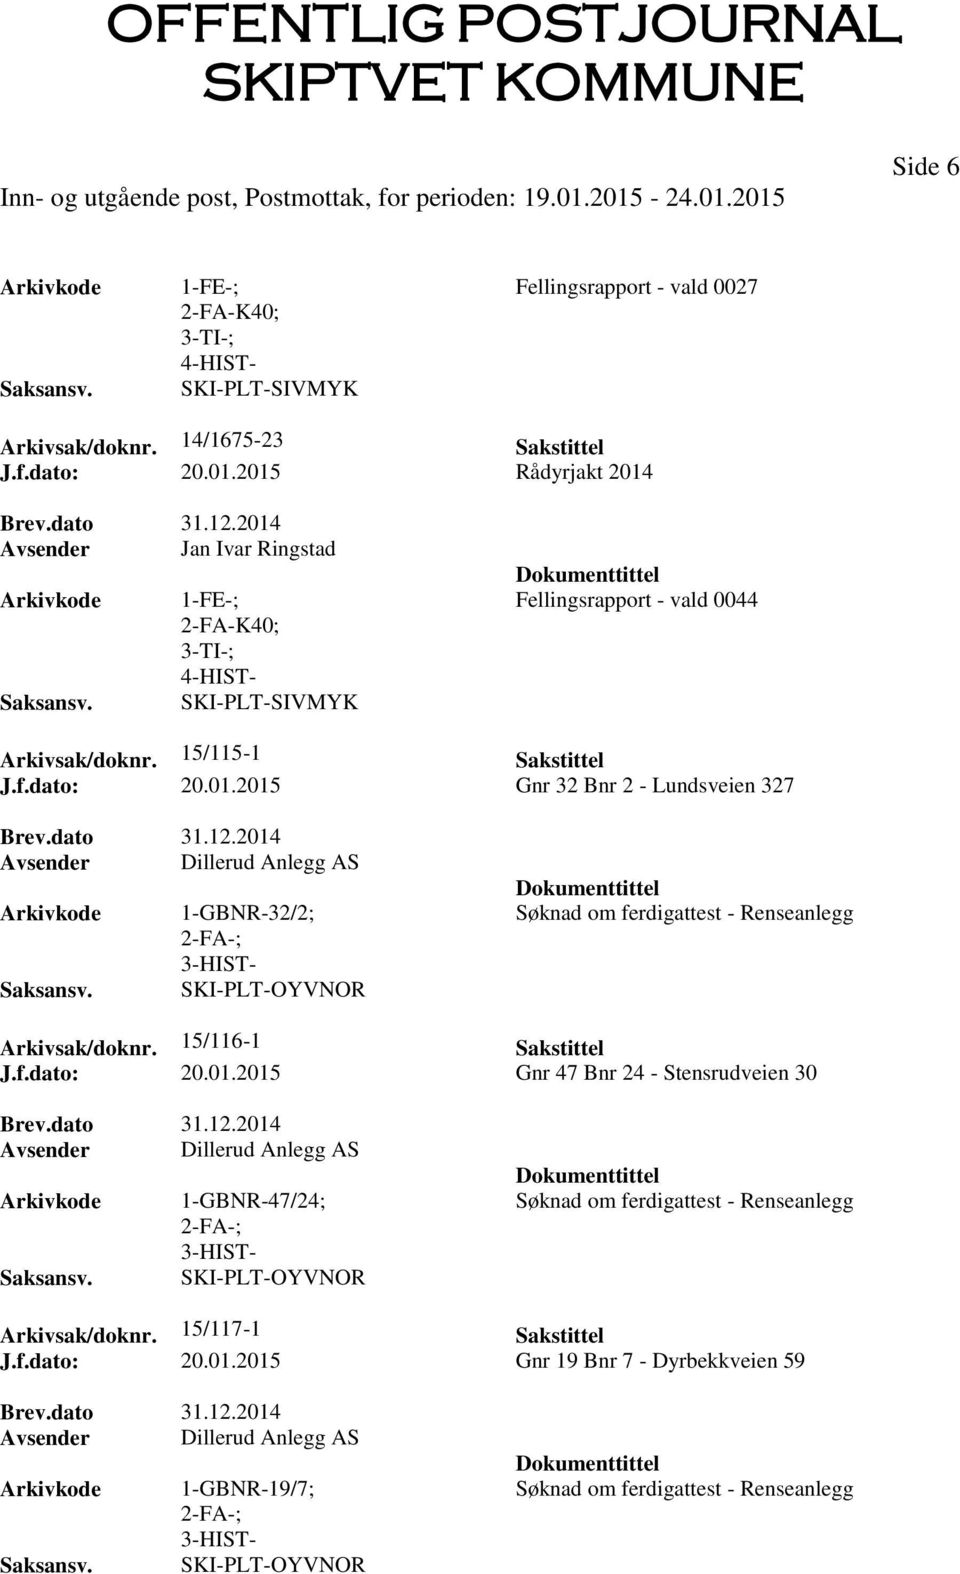 2014 Avsender Dillerud Anlegg AS 1-GBNR-32/2; SKI-PLT-OYVNOR Søknad om ferdigattest - Renseanlegg Arkivsak/doknr. 15/116-1 Sakstittel J.f.dato: 20.01.2015 Gnr 47 Bnr 24 - Stensrudveien 30 Brev.